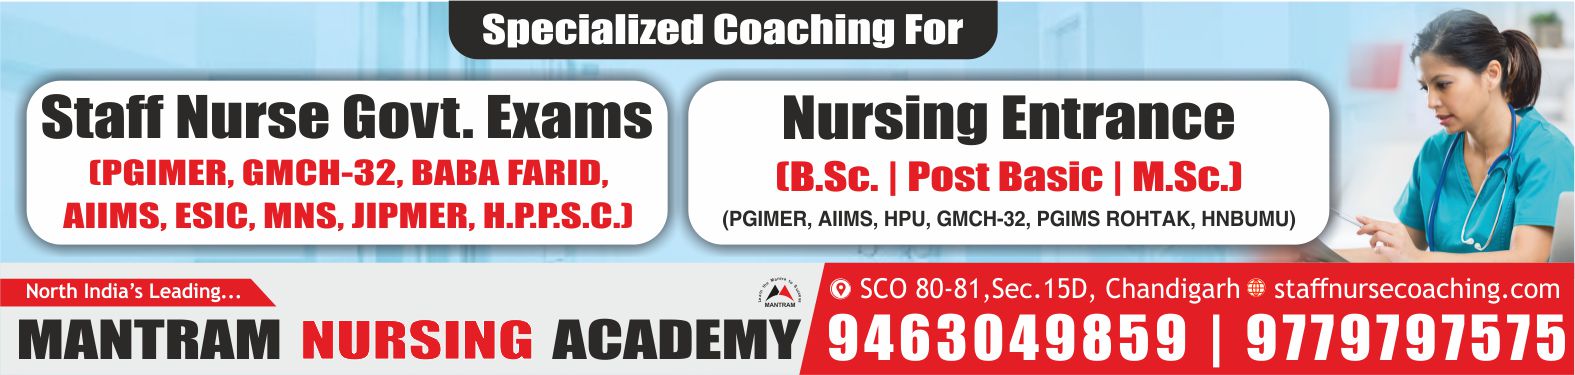 No1 Best Nursing Coaching in Chandigarh